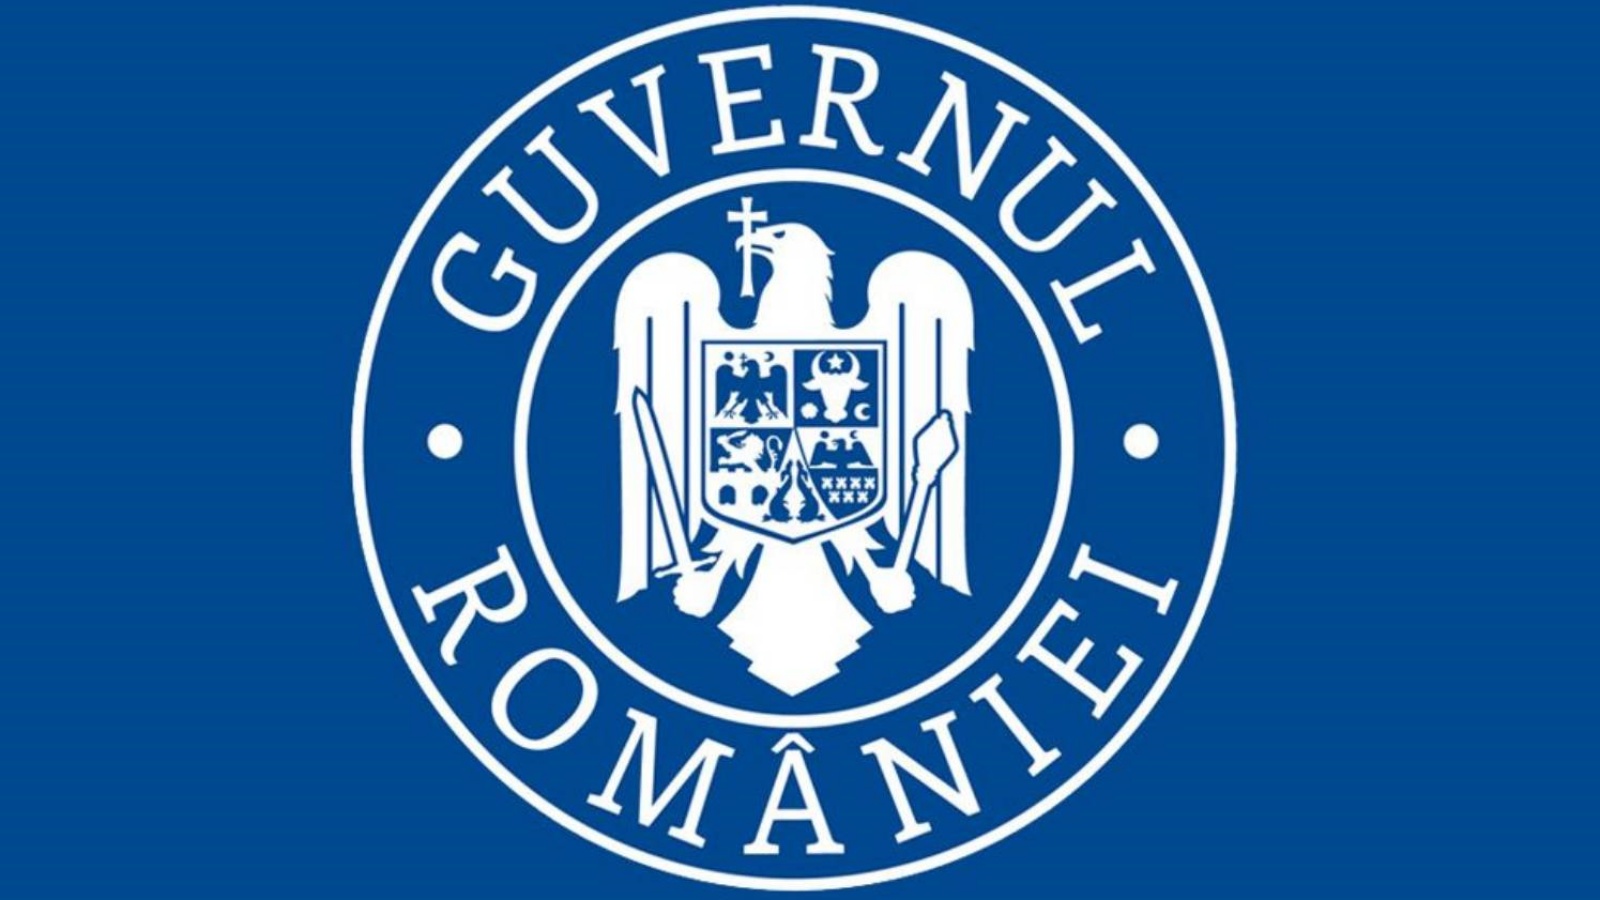 Romanian hallitus haluaa auttaa diasporasta tulevia romanialaisia ​​pääsemään Euroopan rahastoihin helpommin